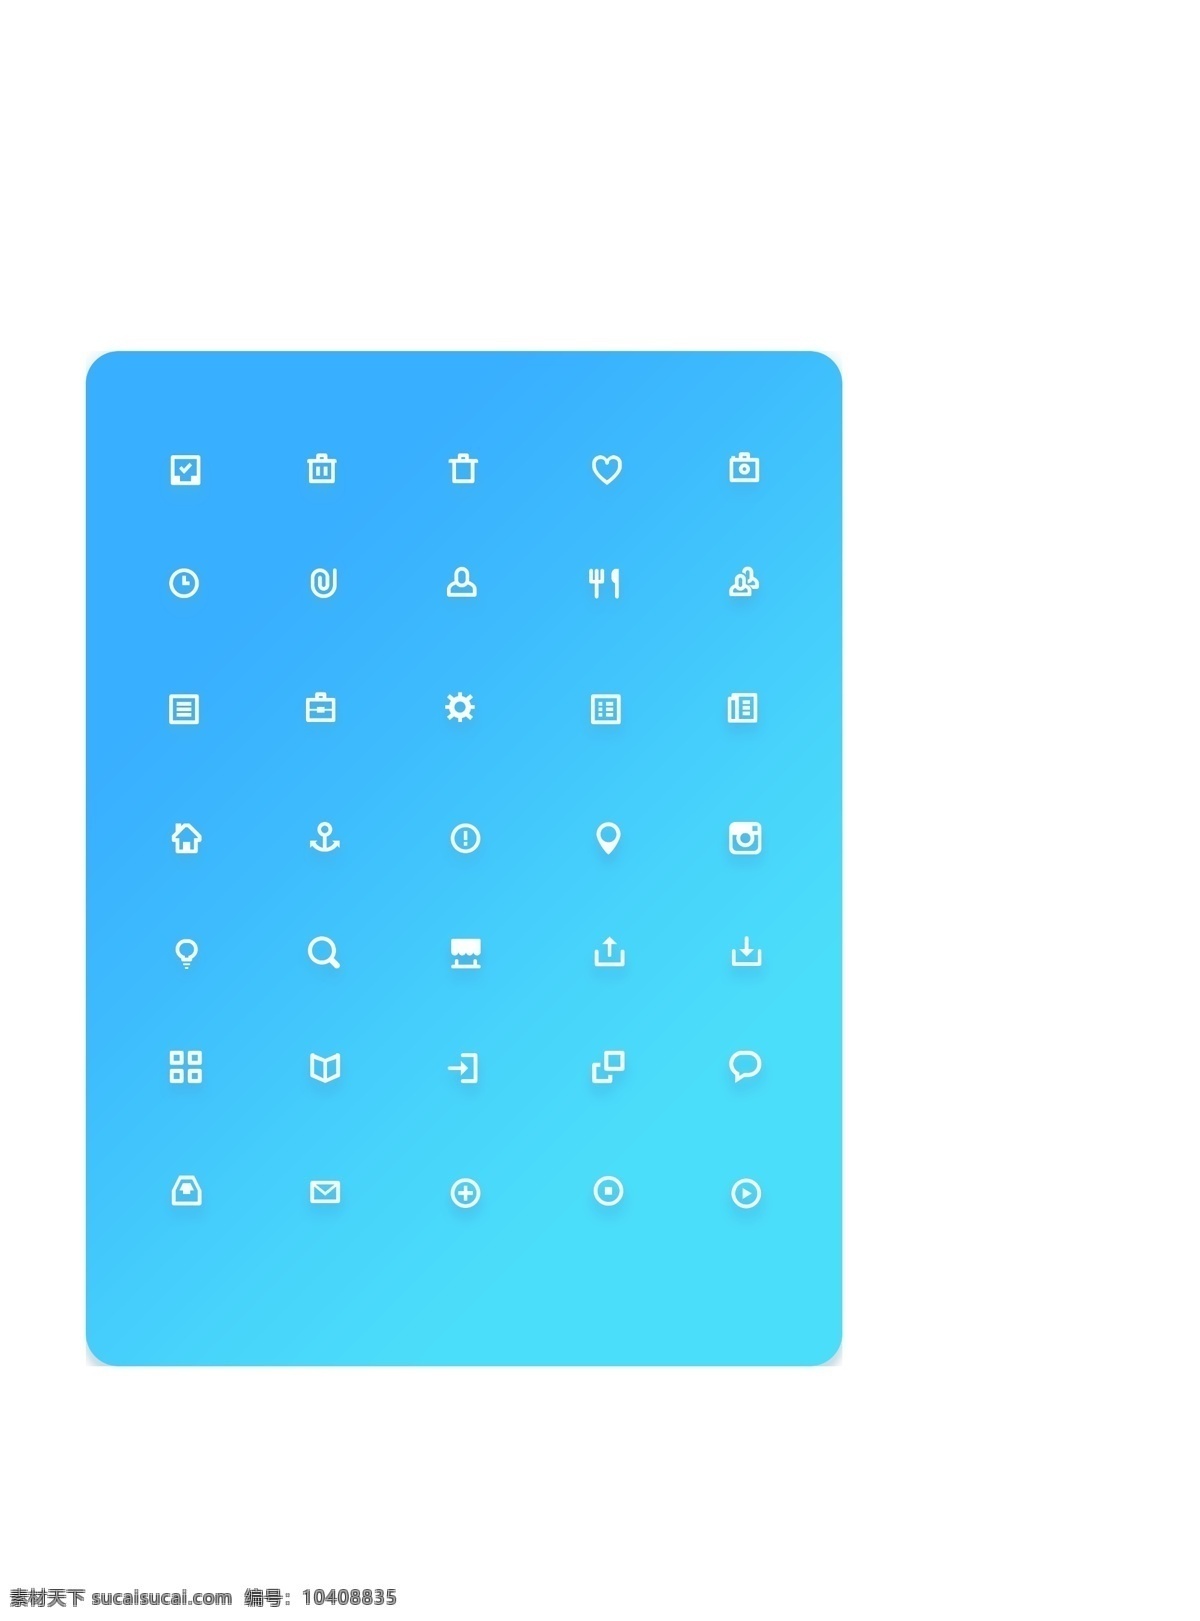 蓝色 线性 icon 大全 简洁 扁平风